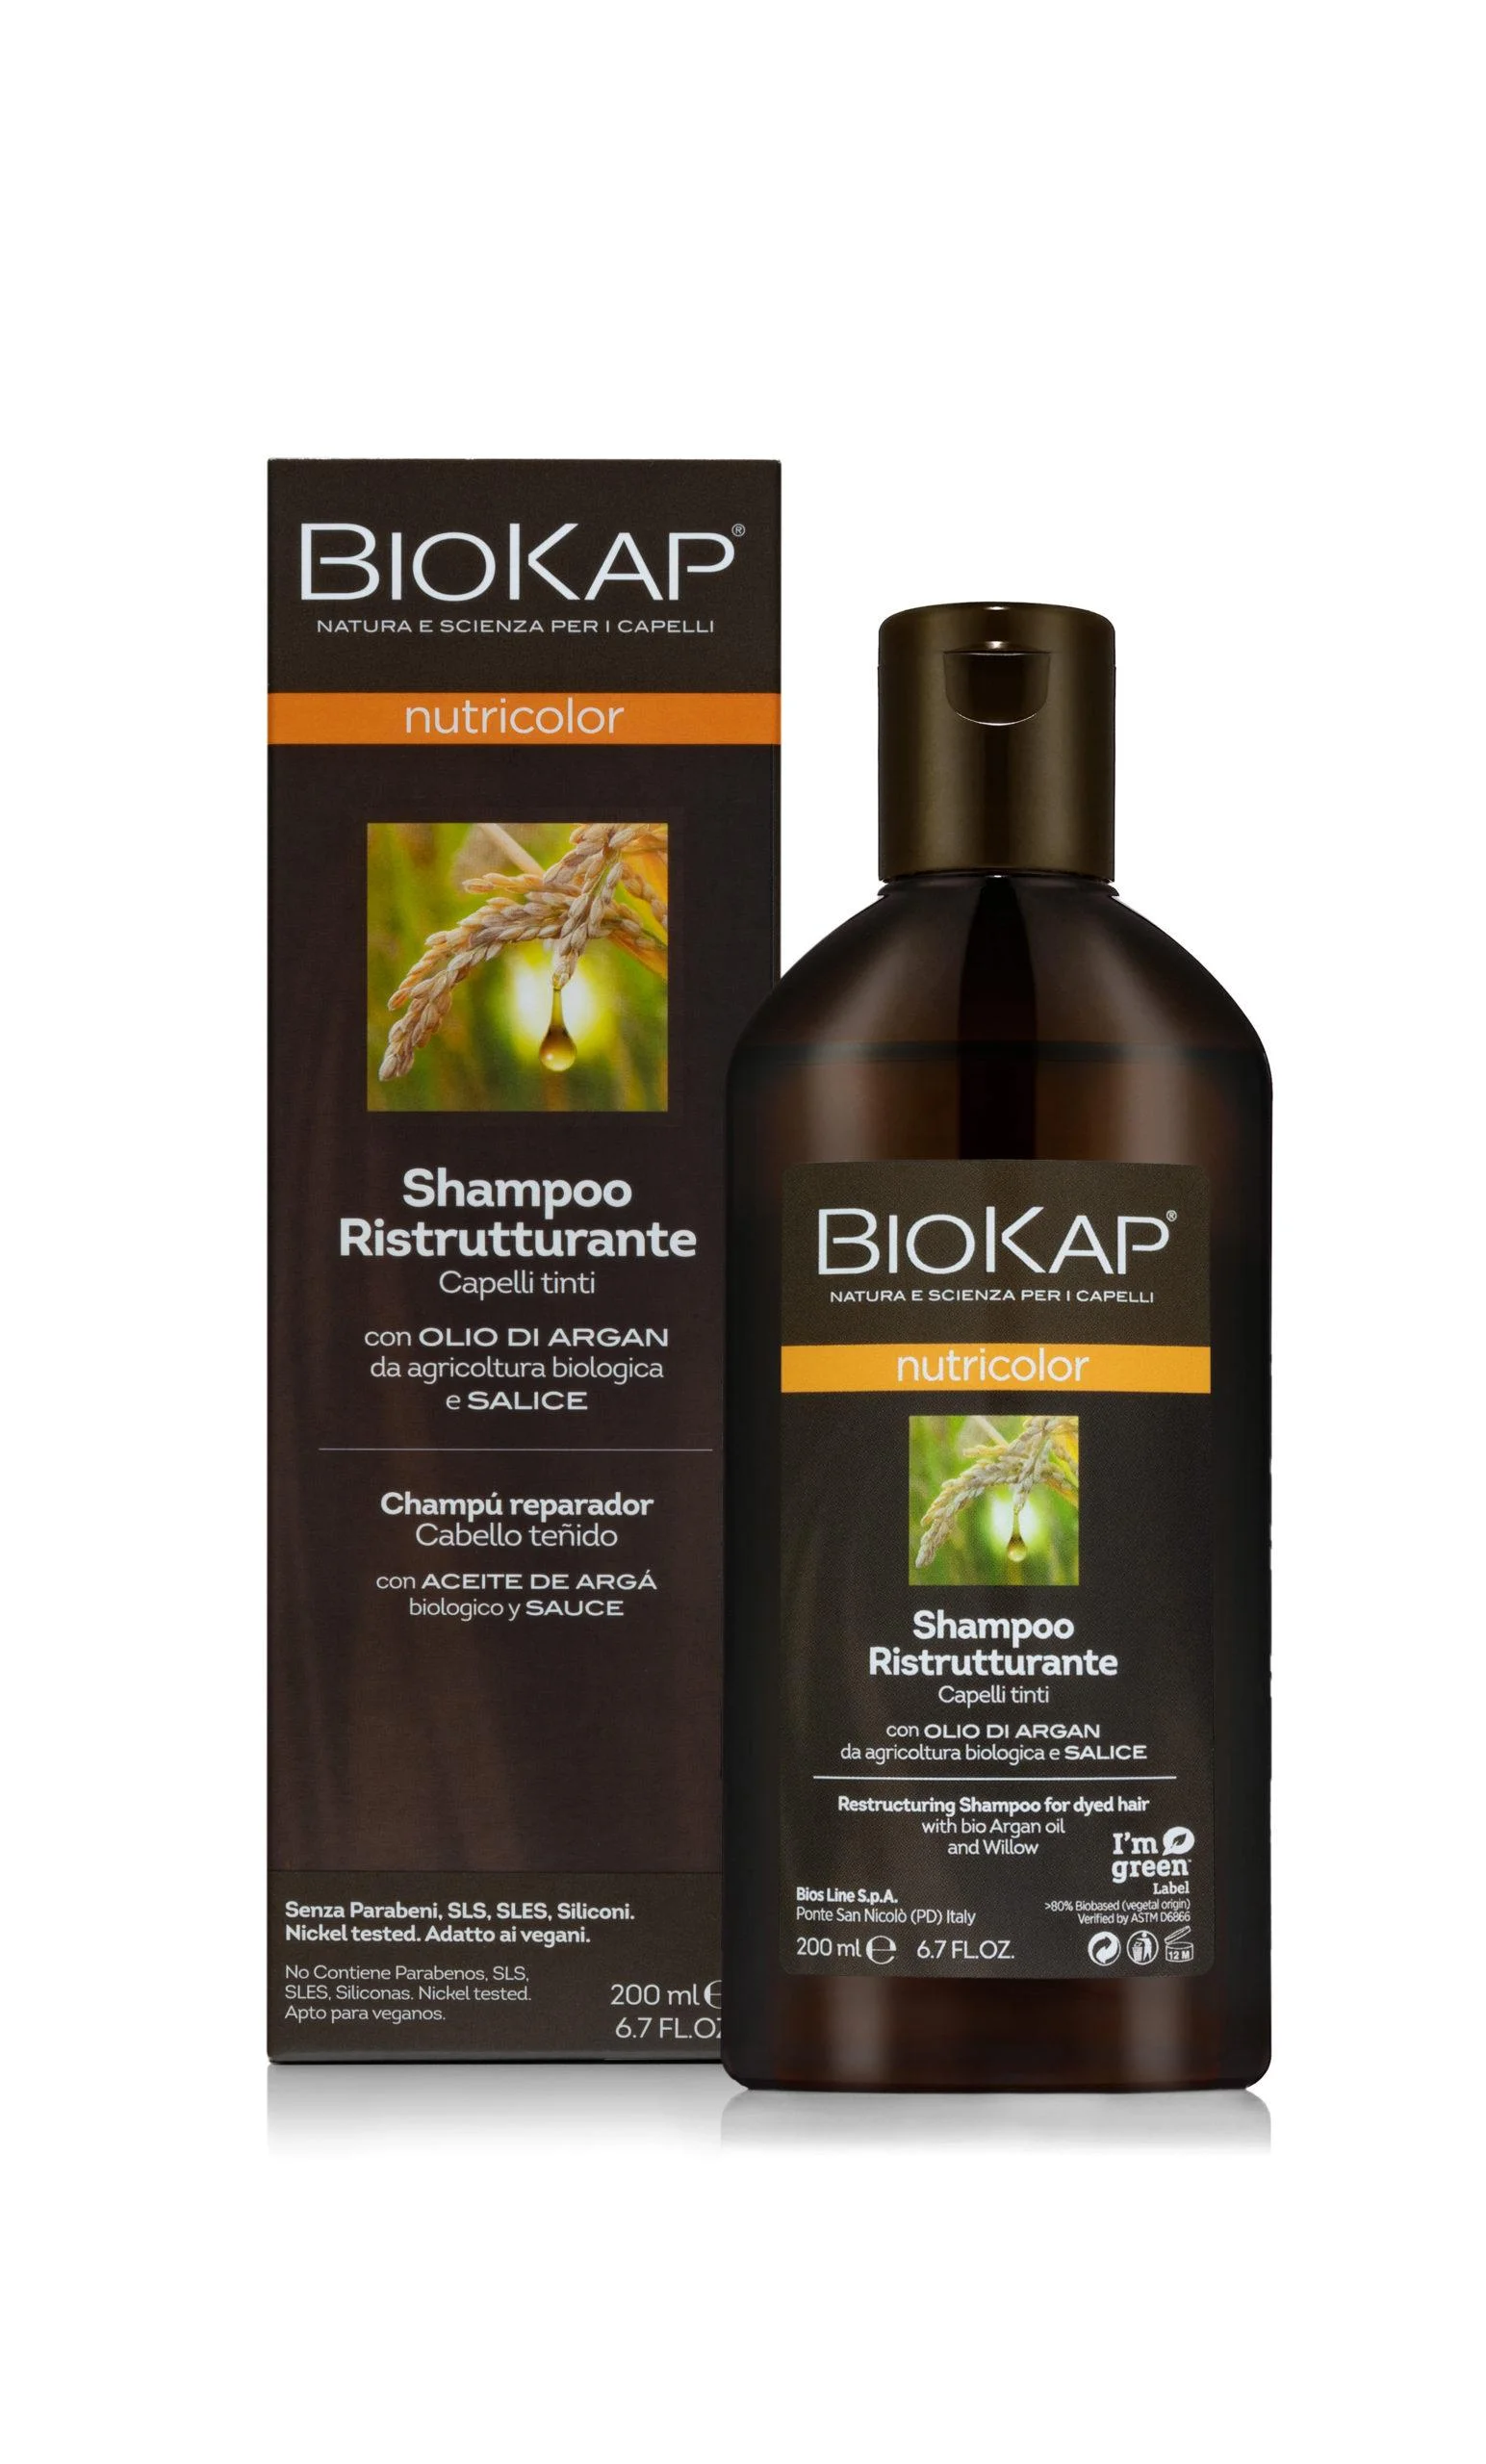 biokap szampon odbudowujący